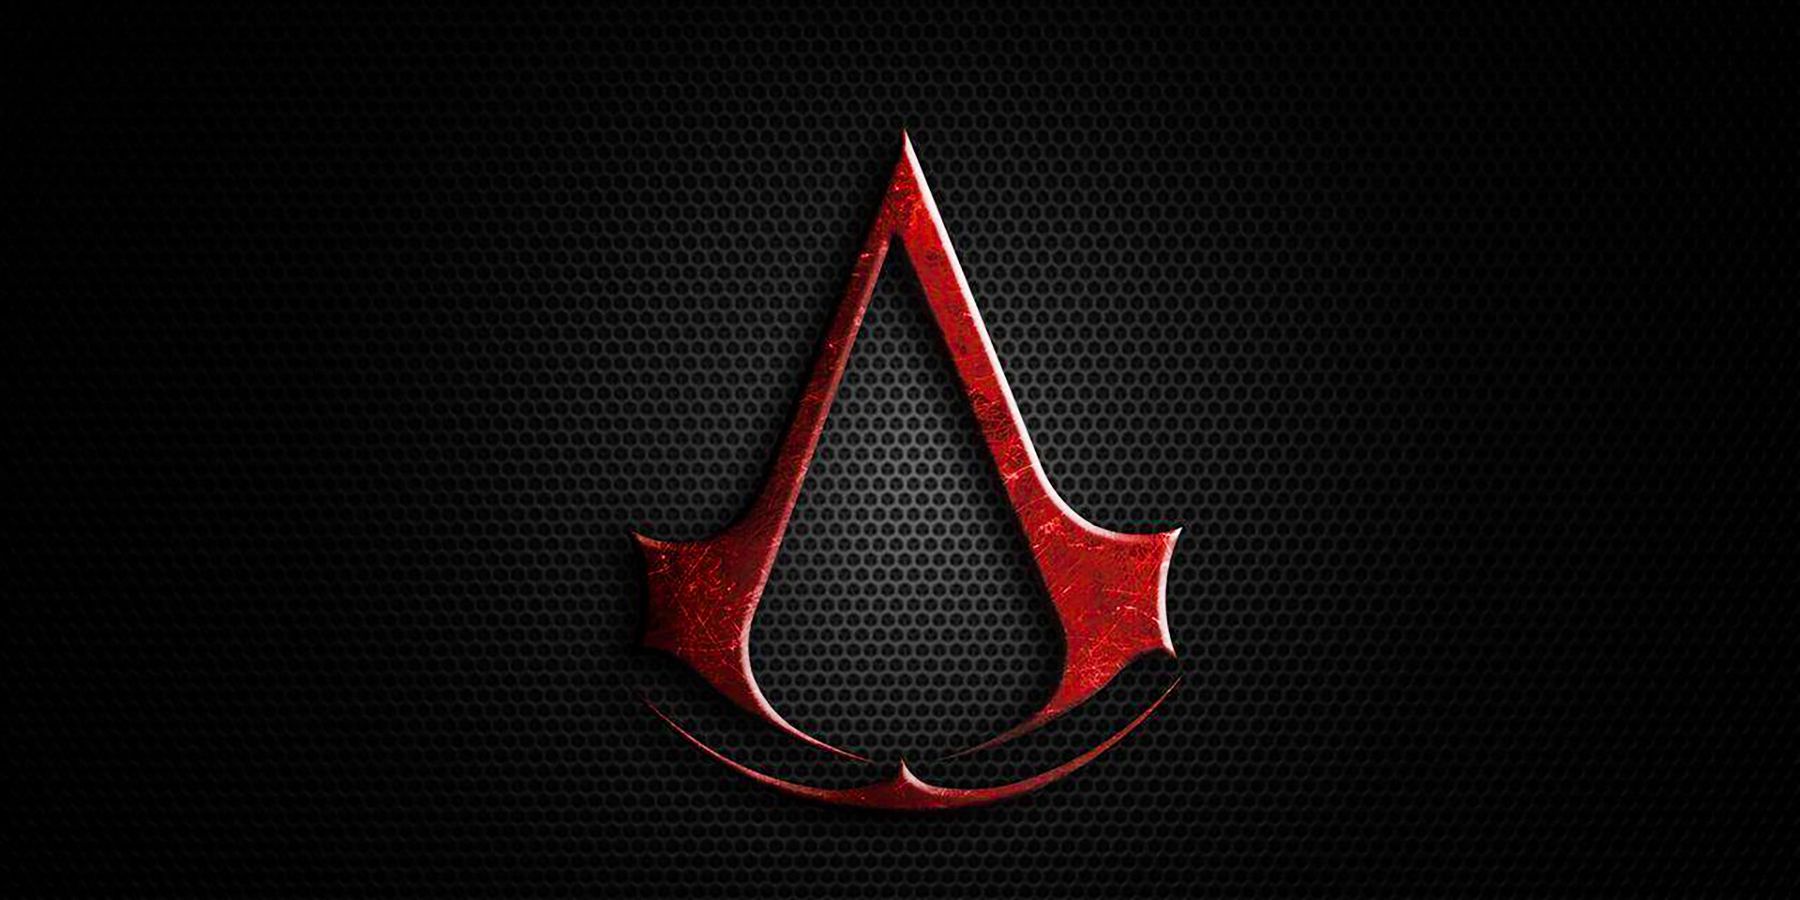 Το παιχνίδι Creed του New Assassin μπορεί να διαρρεύσει ενδεχομένως